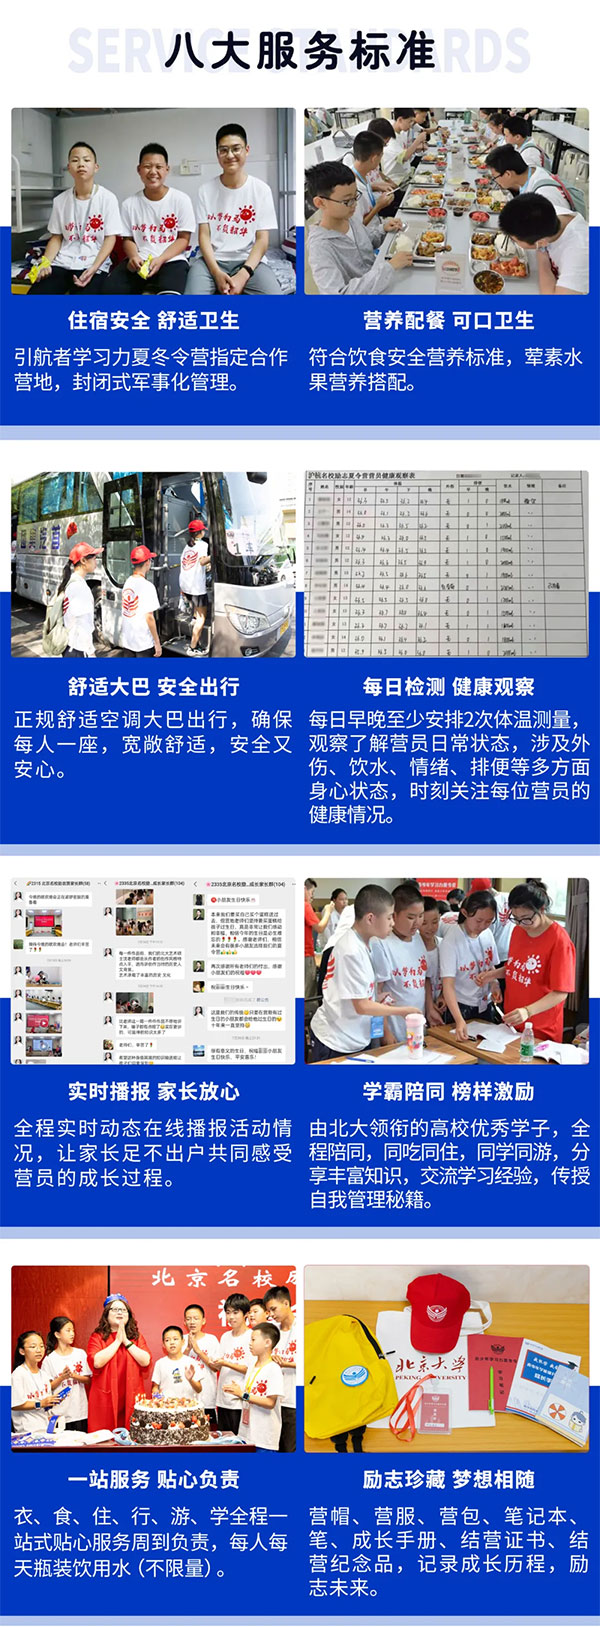 北京青少年学习能力提升夏令营